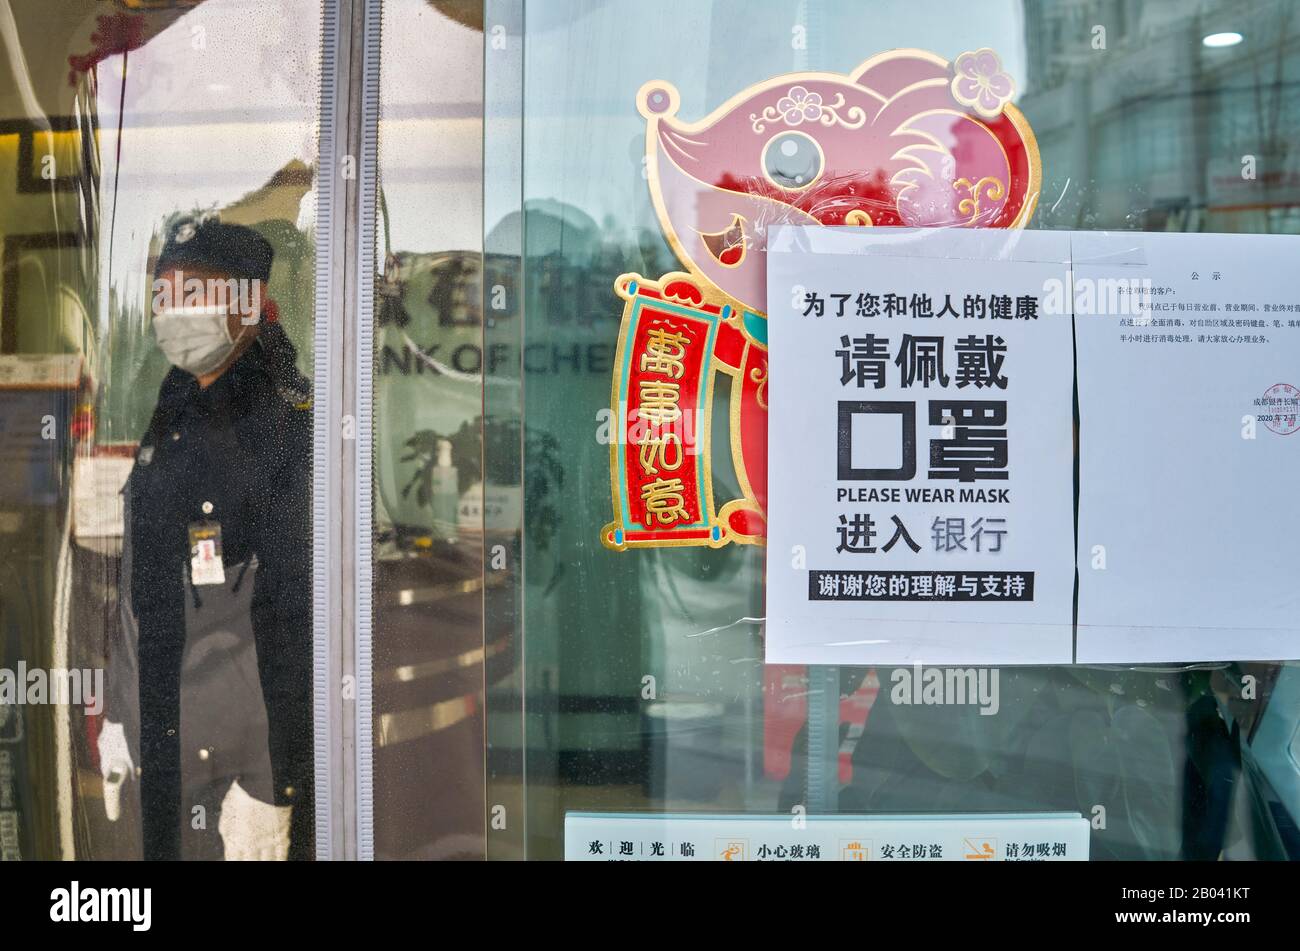 La malattia del coronavirus COVID-19 a Wuhan si sta diffondendo in tutto il mondo. Capodanno cinese 2020, anno di ratto e maschera è un compulsion. Foto Stock